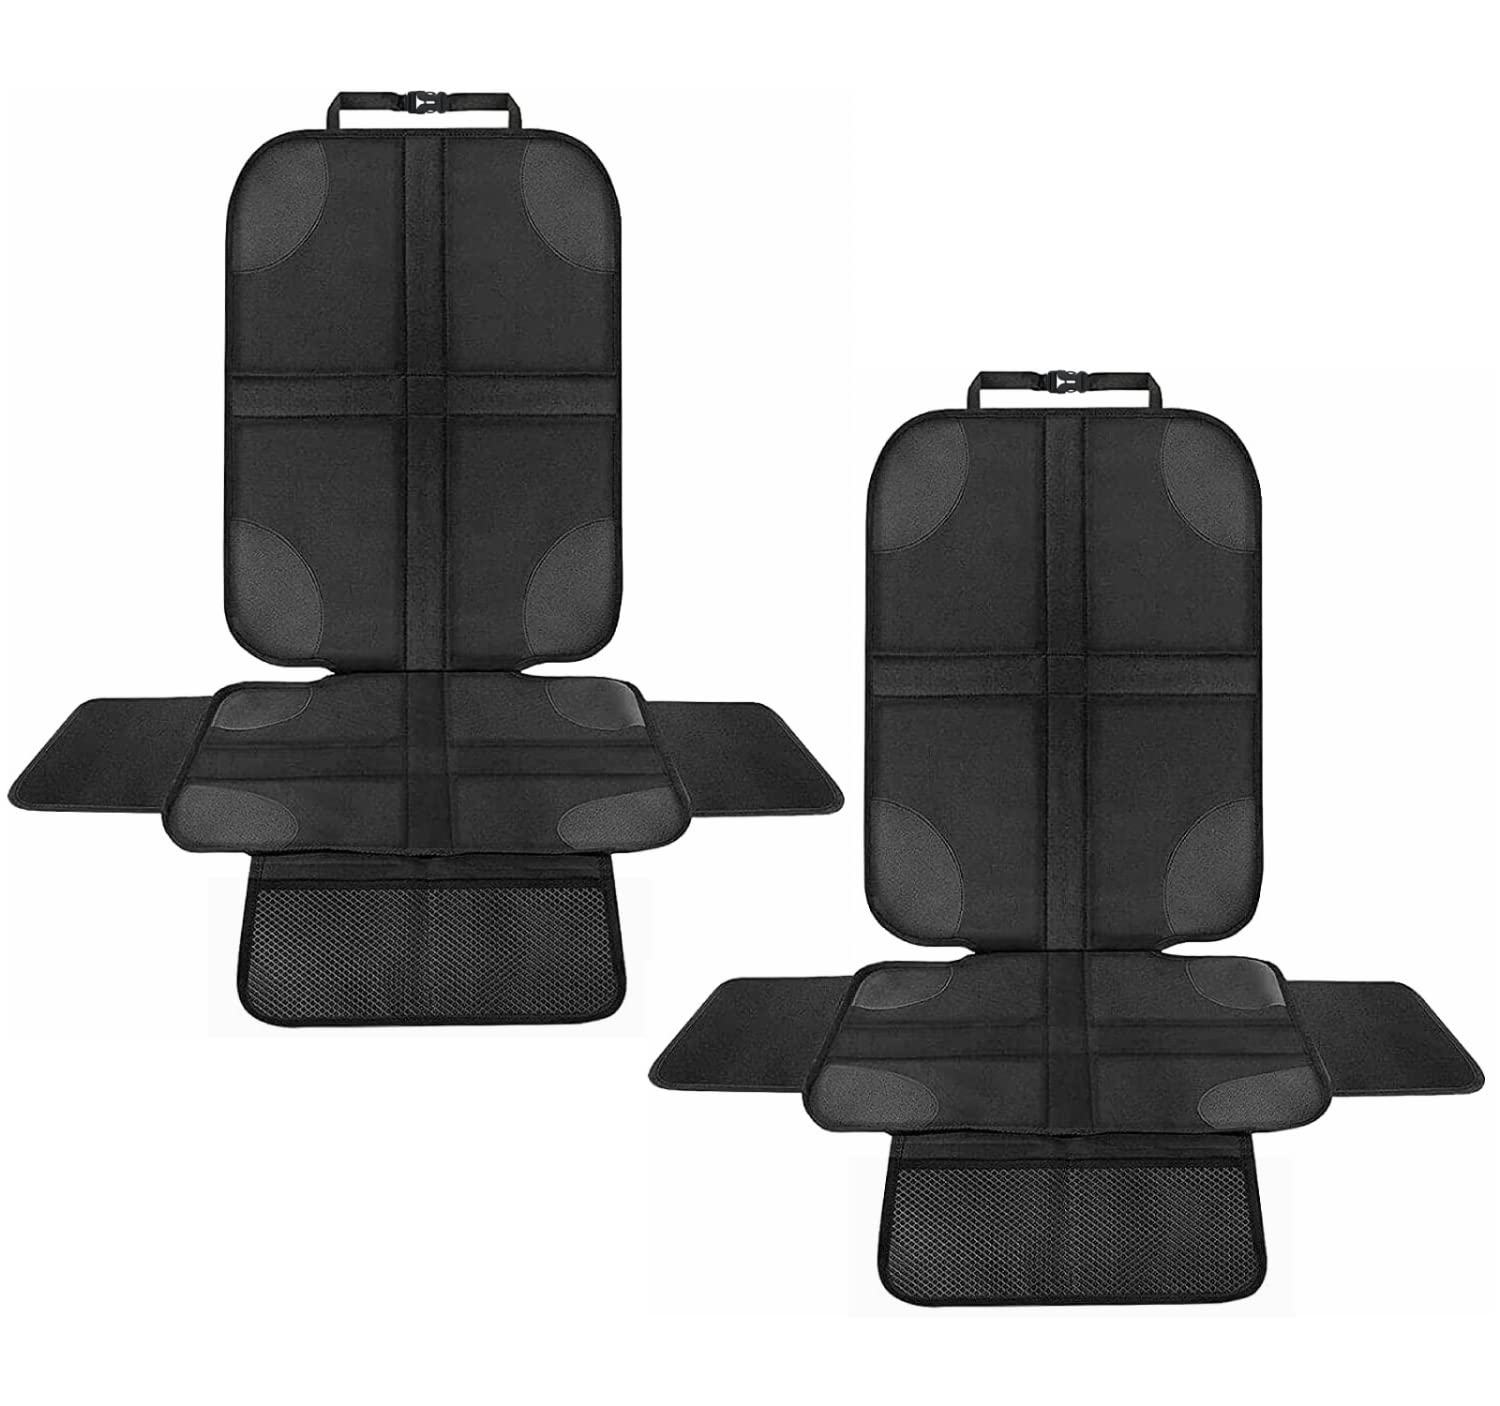 Beshine Kindersitzunterlage Autositzschoner, 2 Stück ISOFIX Geeigneter Sitzschoner Auto Kindersitz, Wasserdichter Autositzauflage mit Netztaschen und Seitenschutz